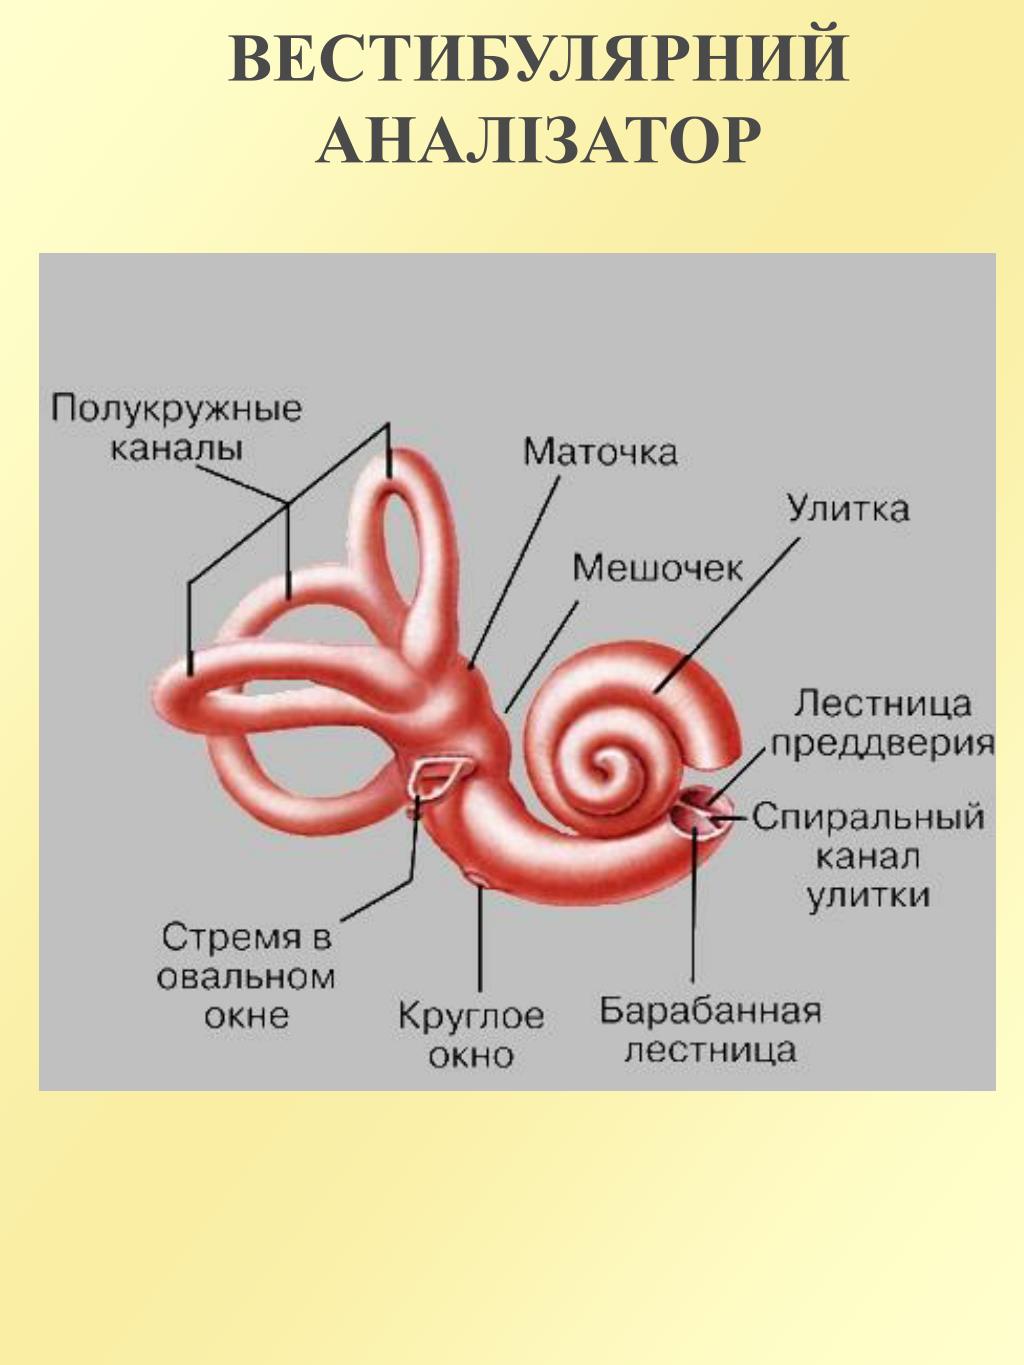 Канал улитки внутреннего уха. Внутреннее ухо маточка и мешочек. Анатомия улитки внутреннего уха. Строение полукружных каналов внутреннего уха. Полукружные канальцы внутреннего уха.